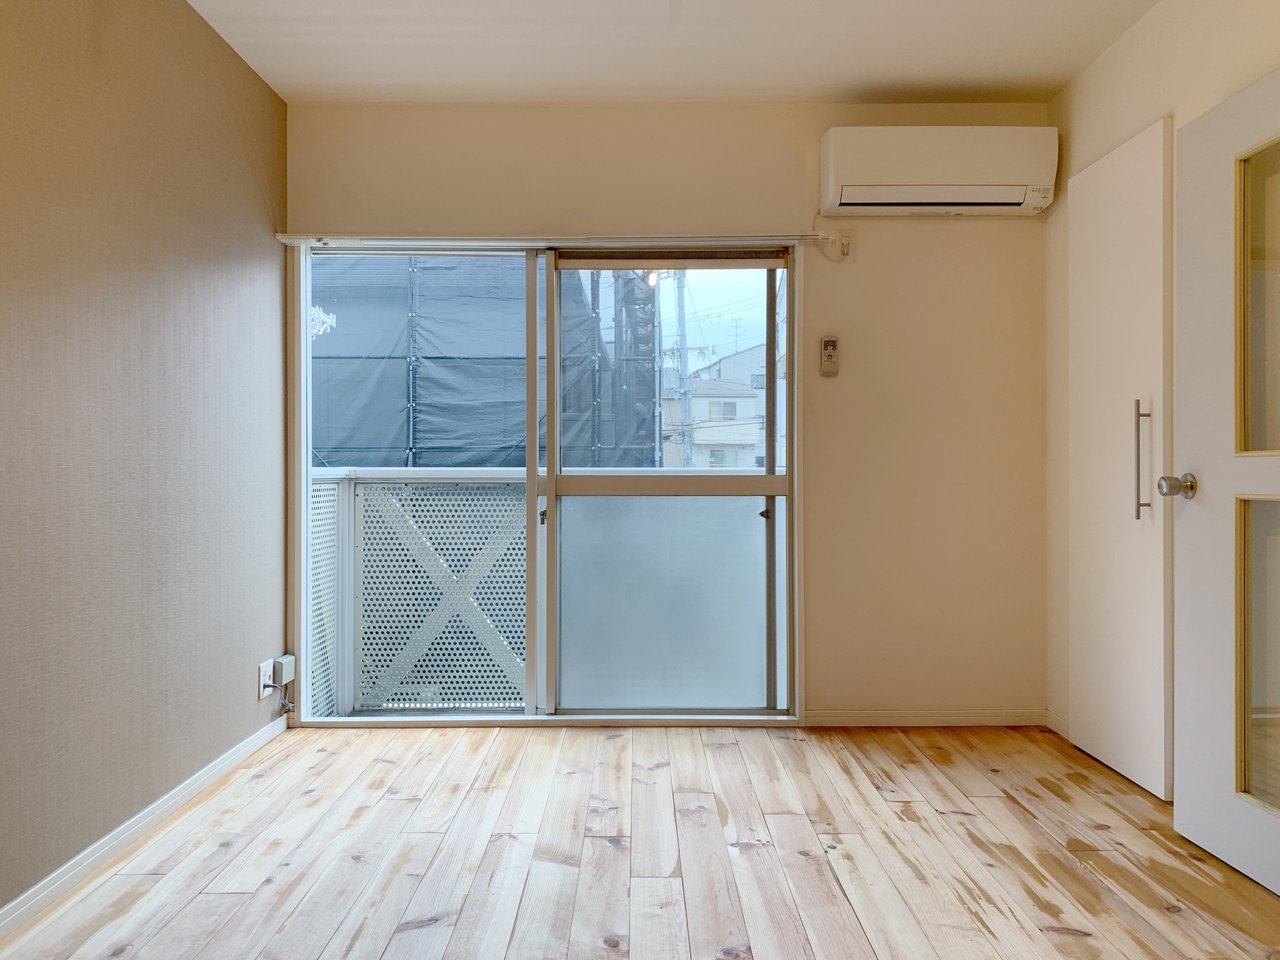 こちらはグッドルームのオリジナルリノベーション「TOMOS」仕様のお部屋。パイン材の柔らかな無垢床がお迎えしてくれます。